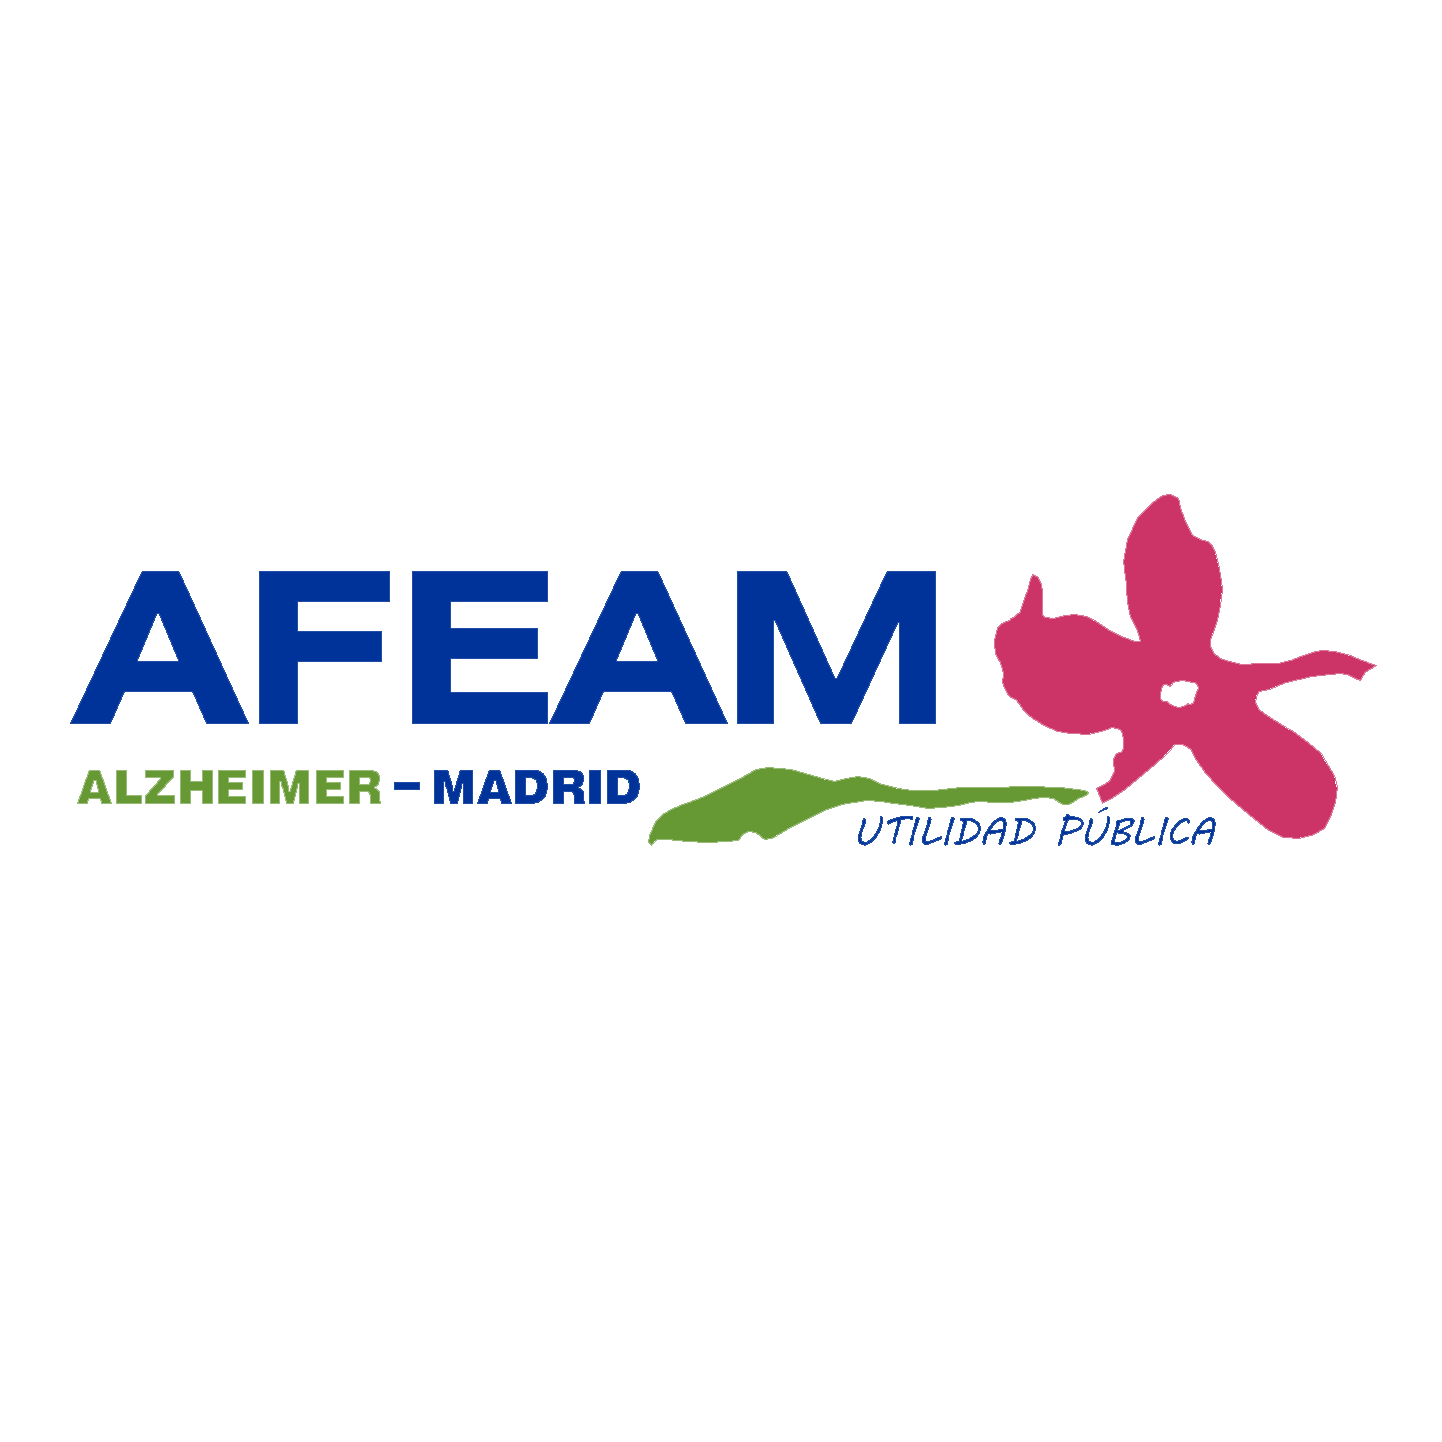 AFEAM - Asociación de Familiares de Enfermos de Alzheimer de Madrid